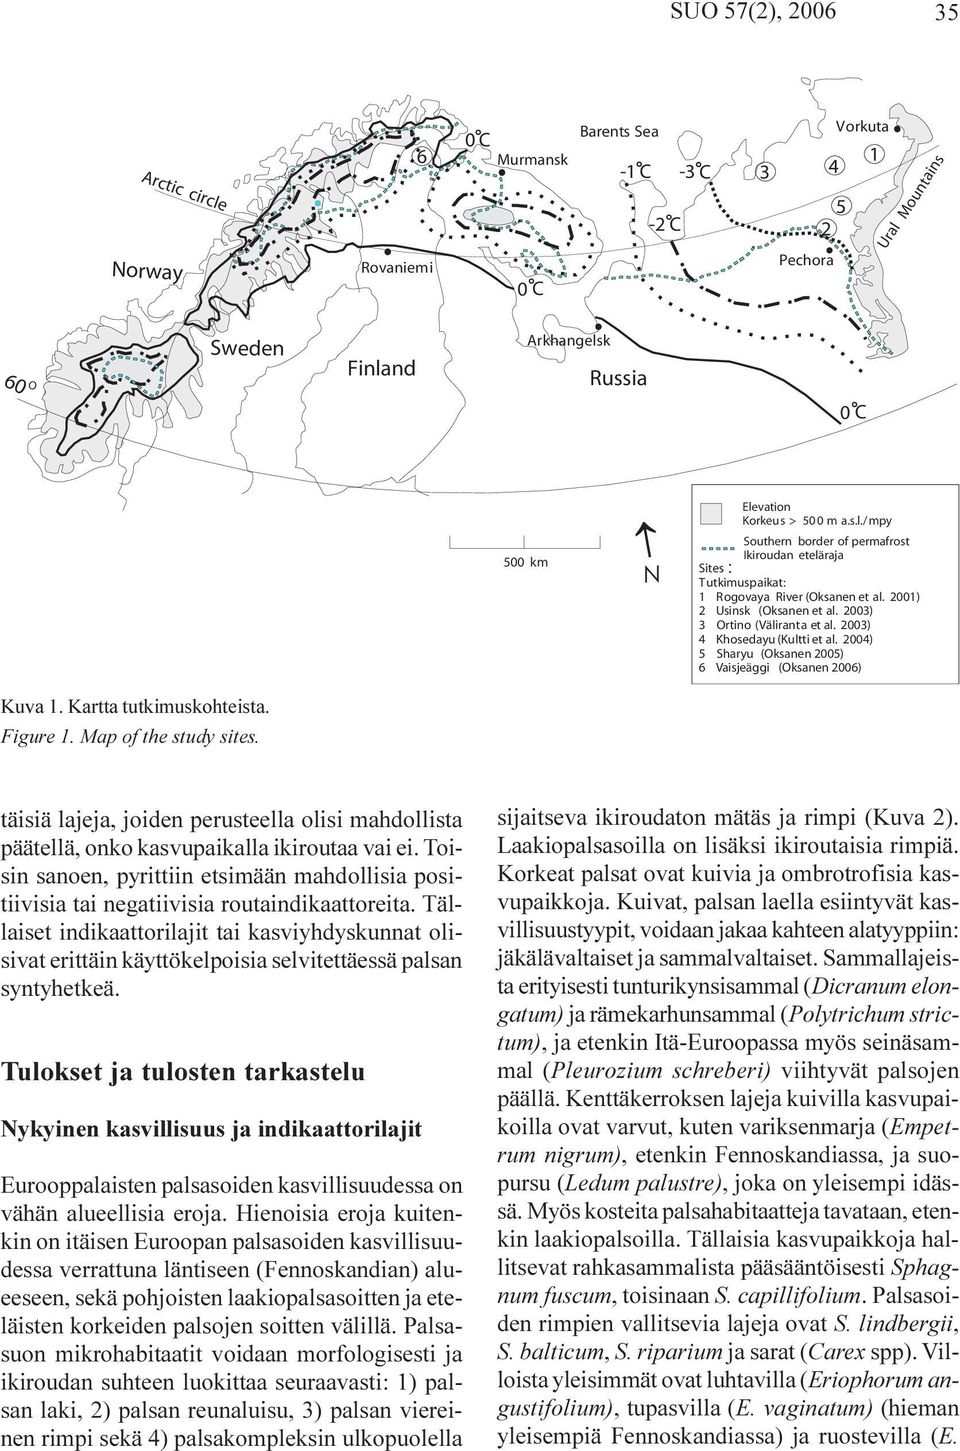 2003) 4 Khosedayu (Kultti et al. 2004) 5 Sharyu (Oksanen 2005) 6 Vaisjeäggi (Oksanen 2006) : Kuva 1. Kartta tutkimuskohteista. Figure 1. Map of the study sites.